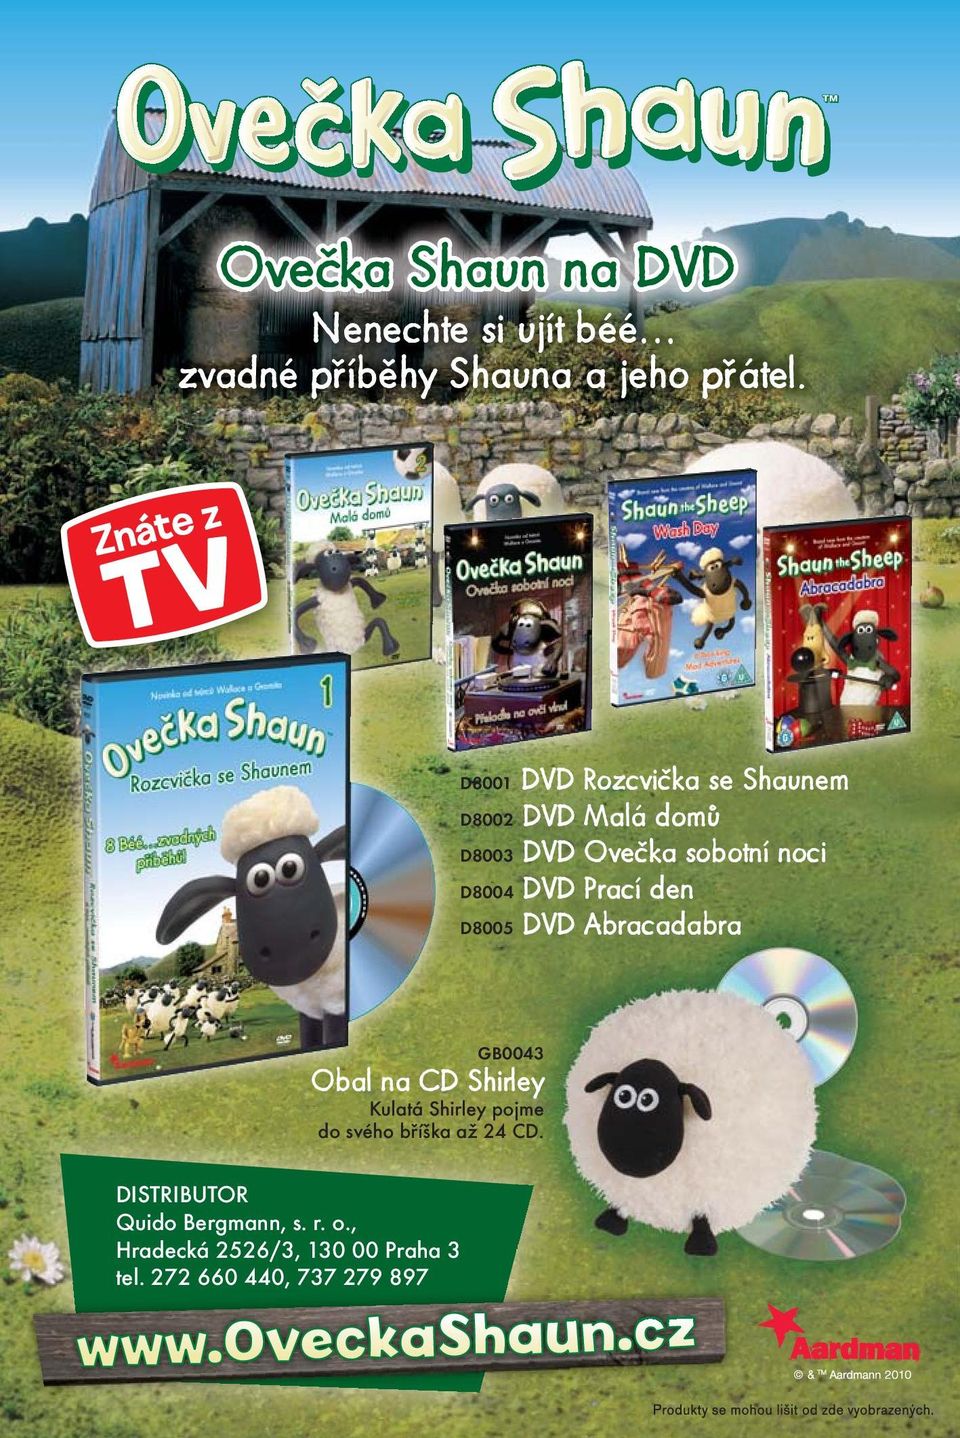 Prací den D8005 DVD Abracadabra GB0043 Obal na CD Shirley Kulatá Shirley pojme do svého